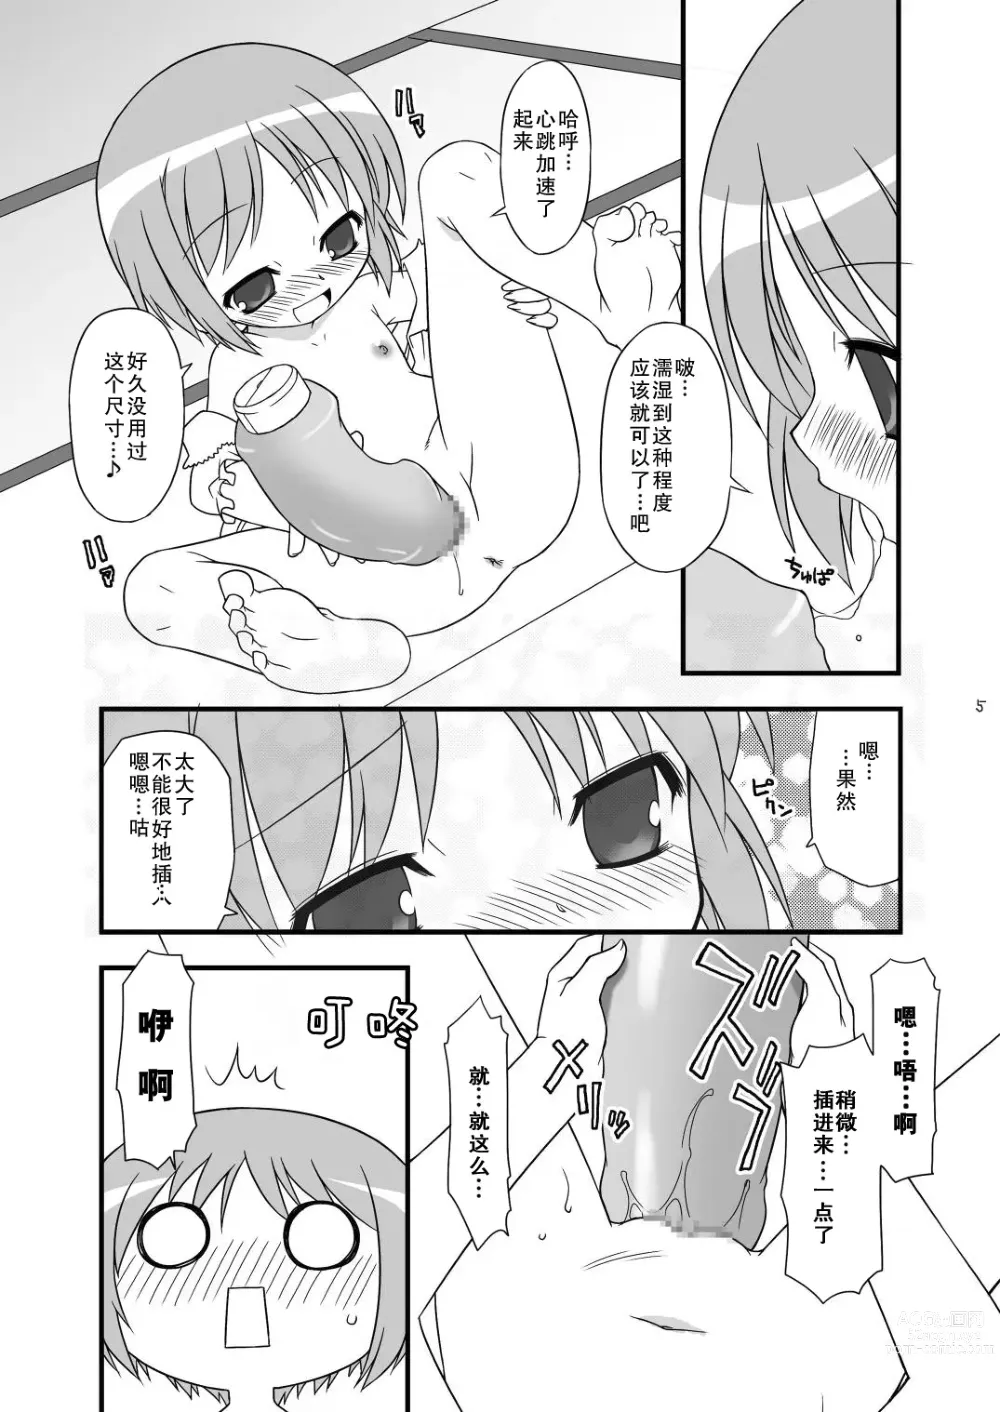 Page 6 of doujinshi KA+SHI+MA+SHI=INDEX!